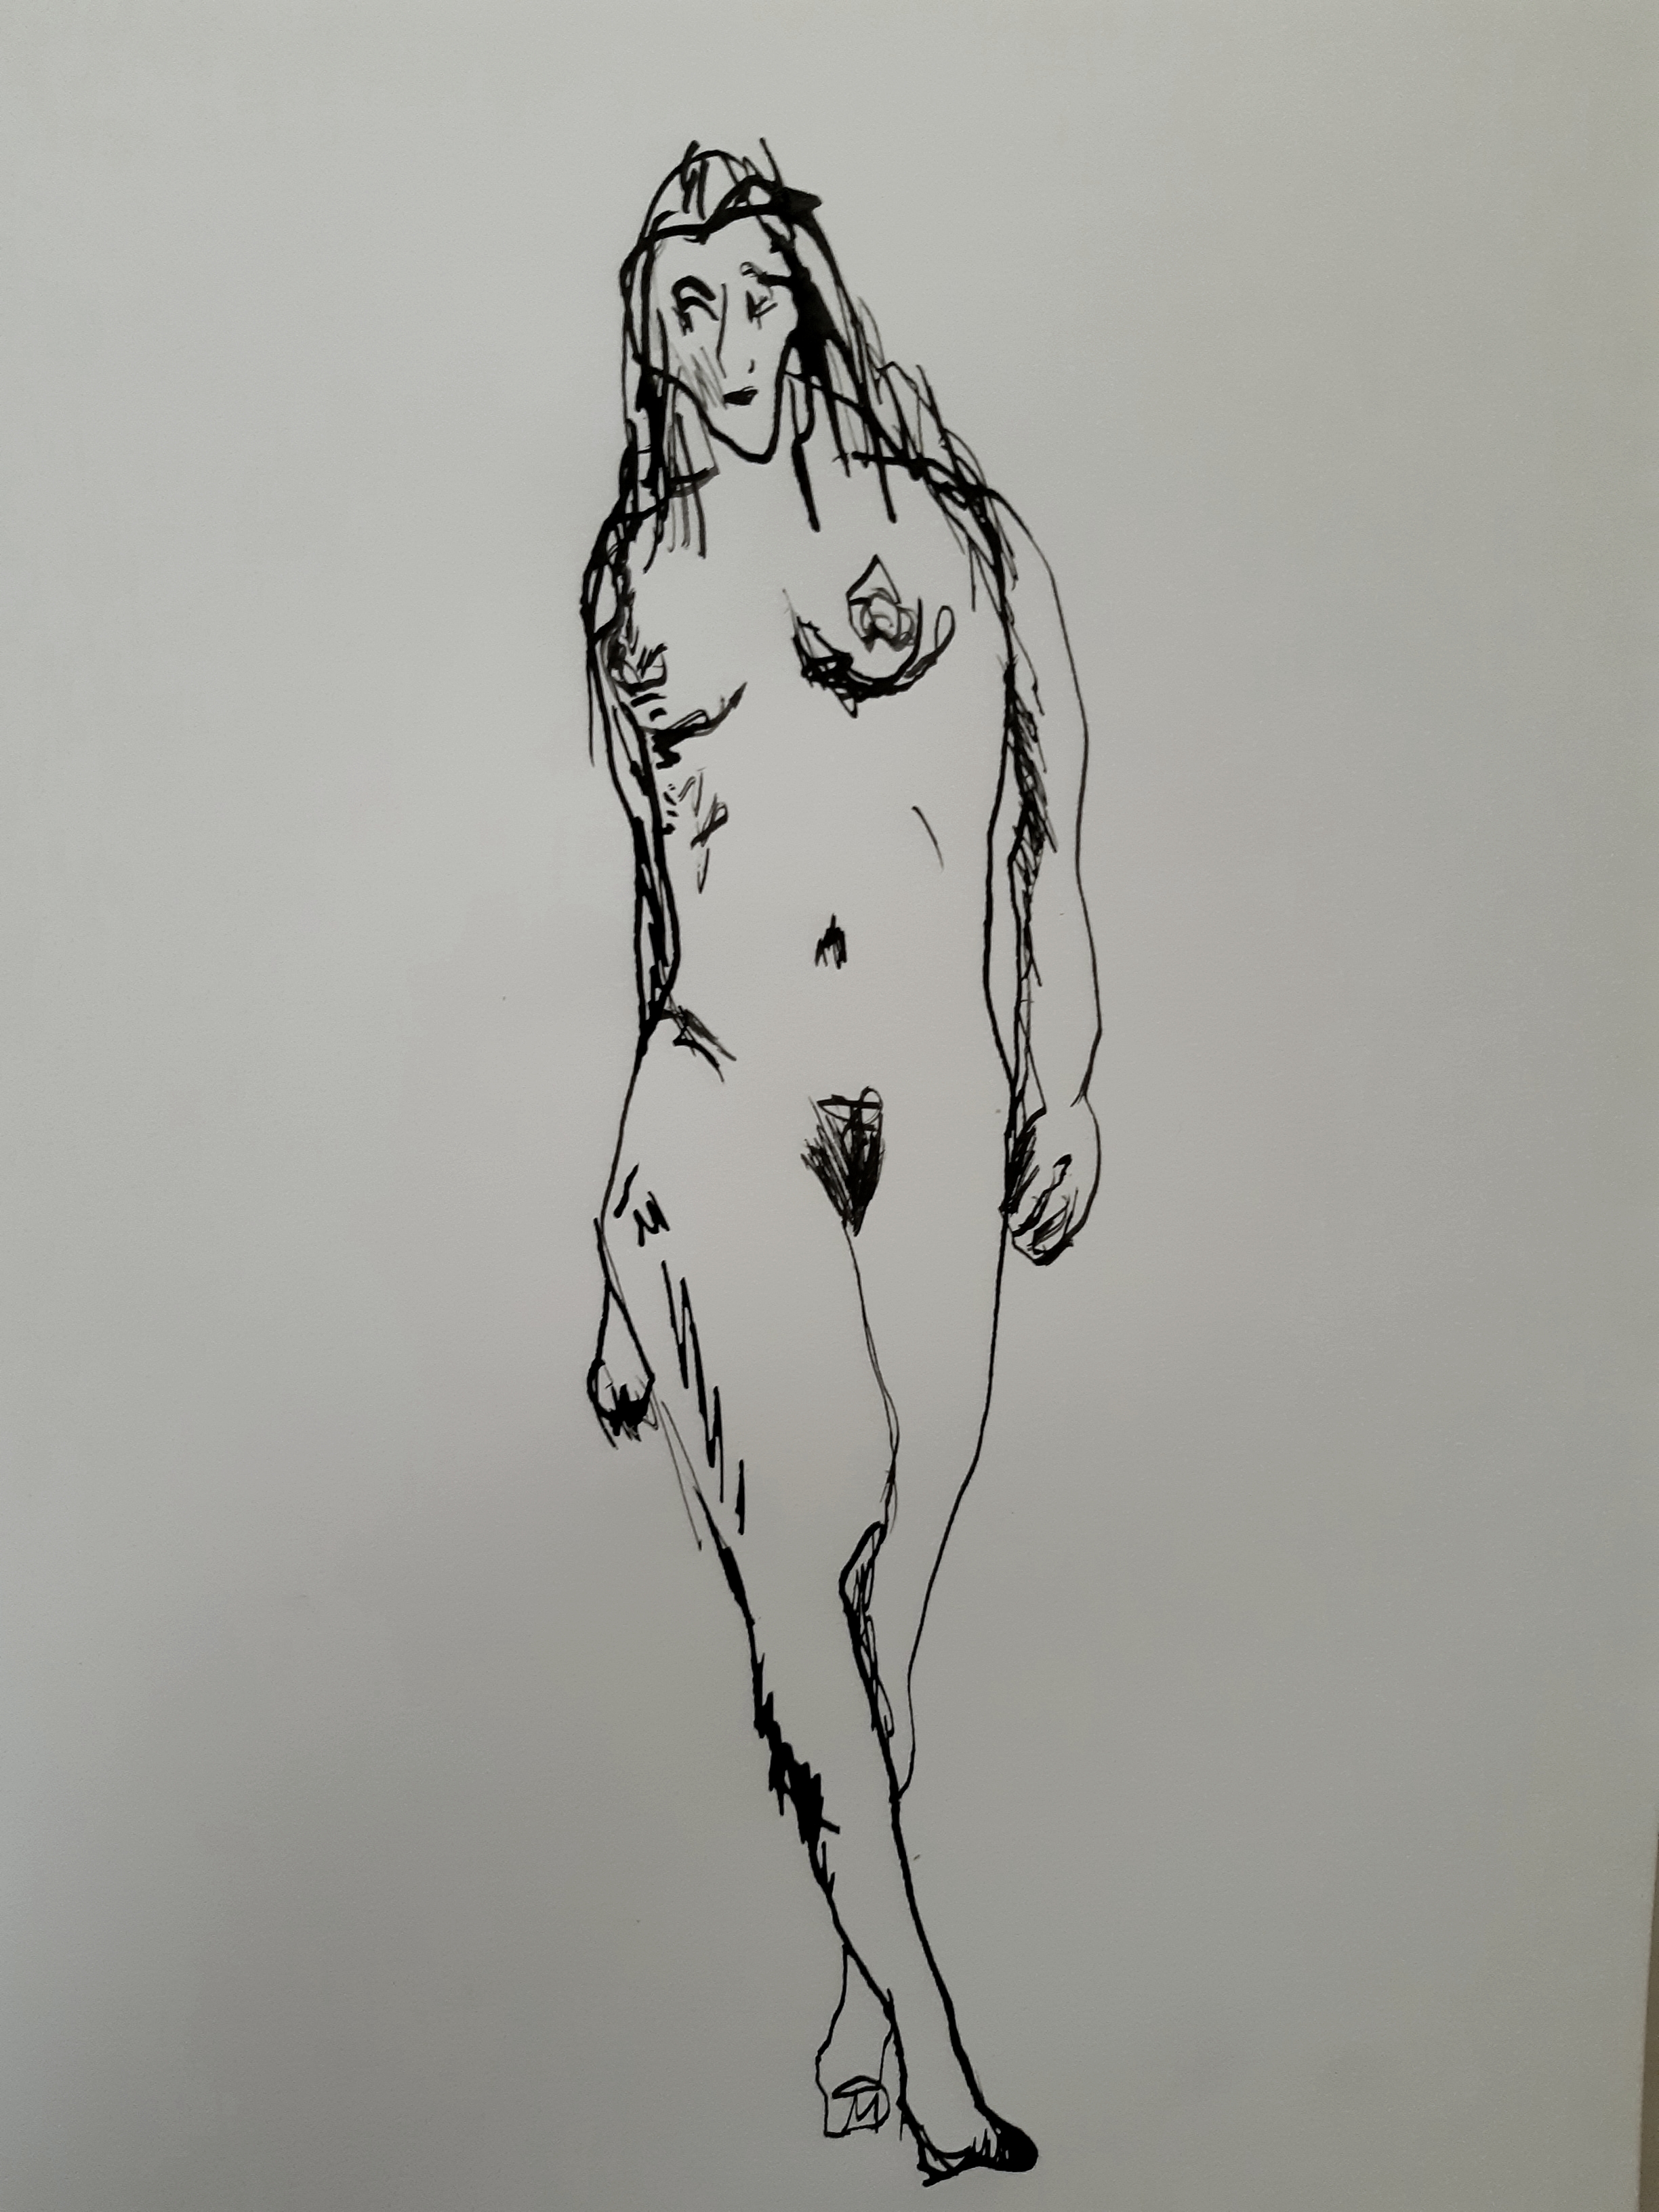  Dessin en pied feutre femme nue sur papier  cours de dessin 